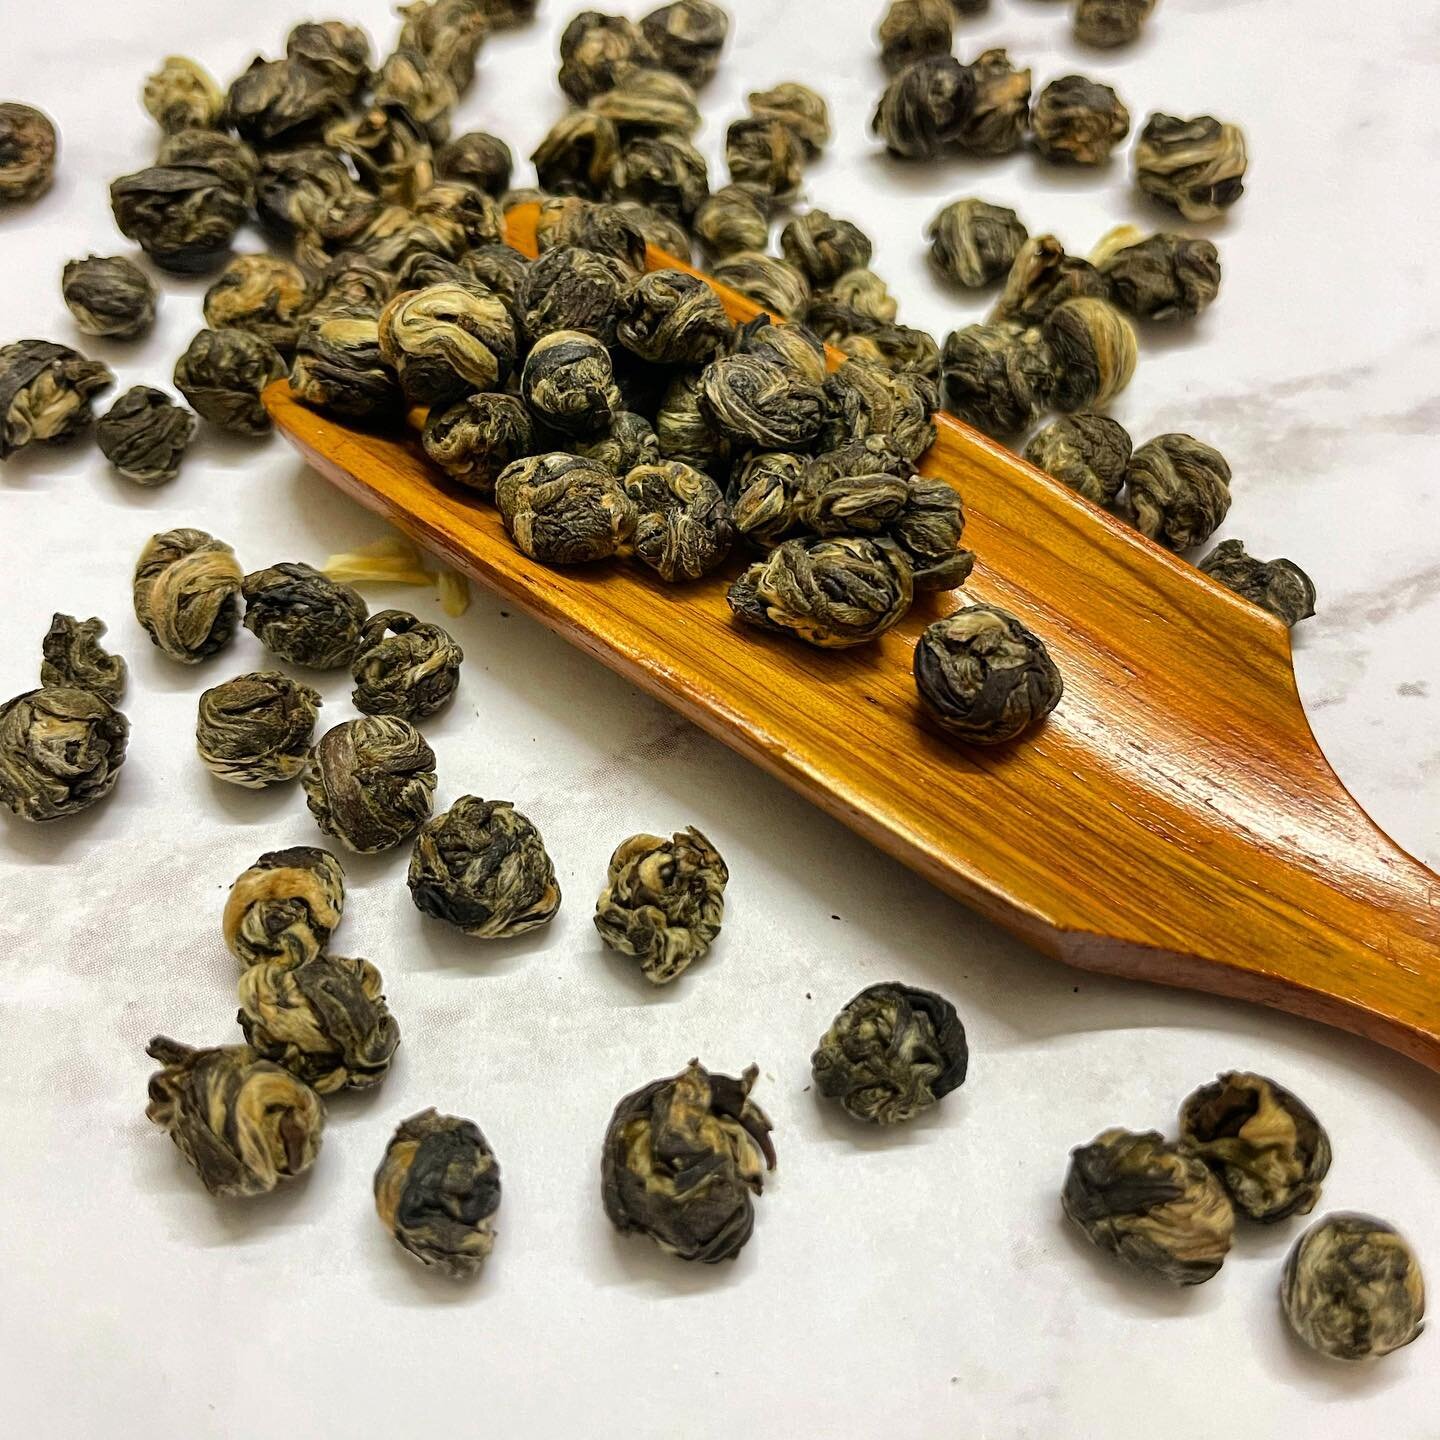 Jasmine Pearls green tea. 

#beantowntea #greentea #jasminetea #teapearls #foodphotography #tealeaves #chinesegreentea